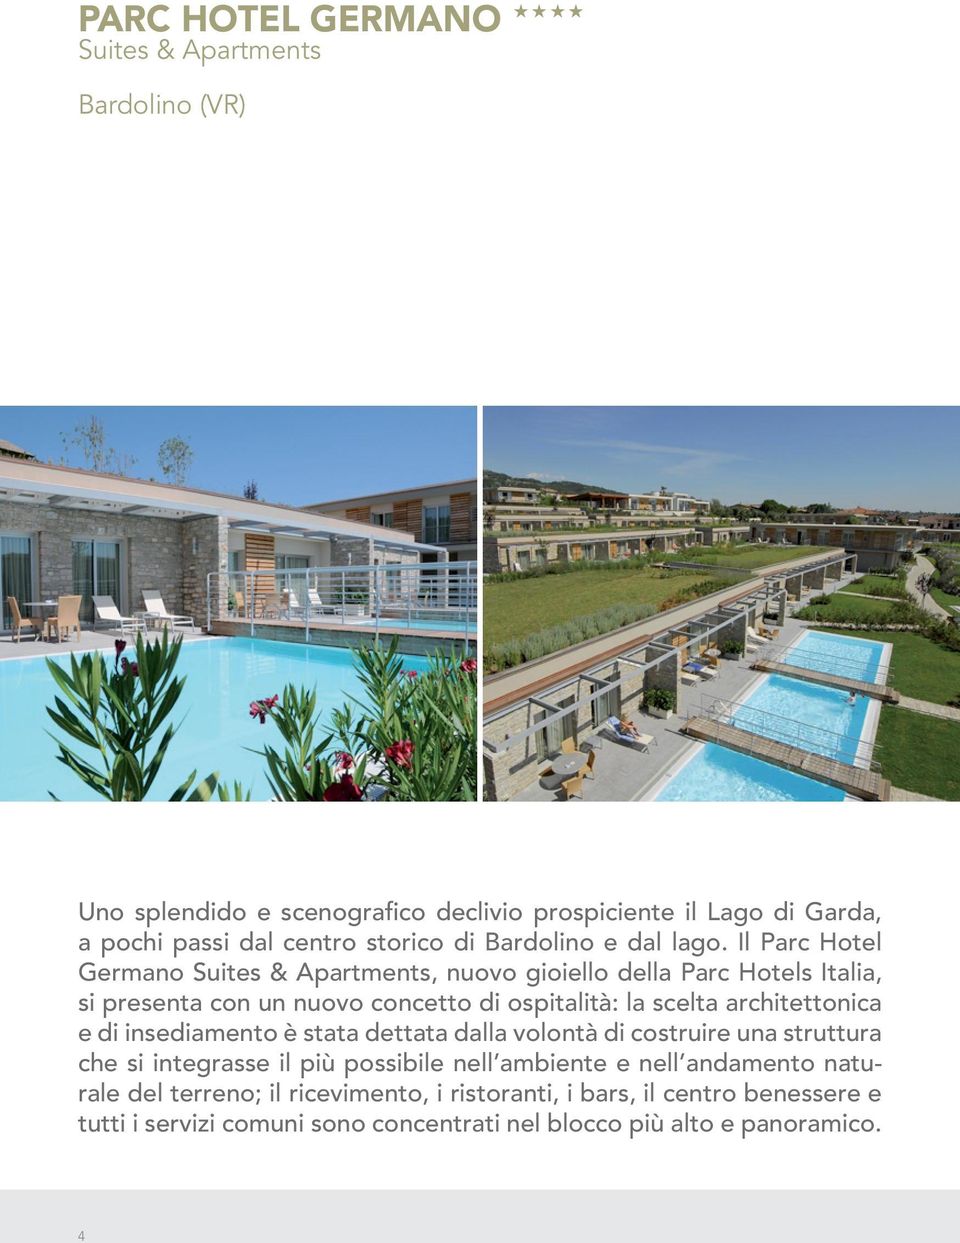 Il Parc Hotel Germano, nuovo gioiello della Parc Hotels Italia, si presenta con un nuovo concetto di ospitalità: la scelta architettonica e di